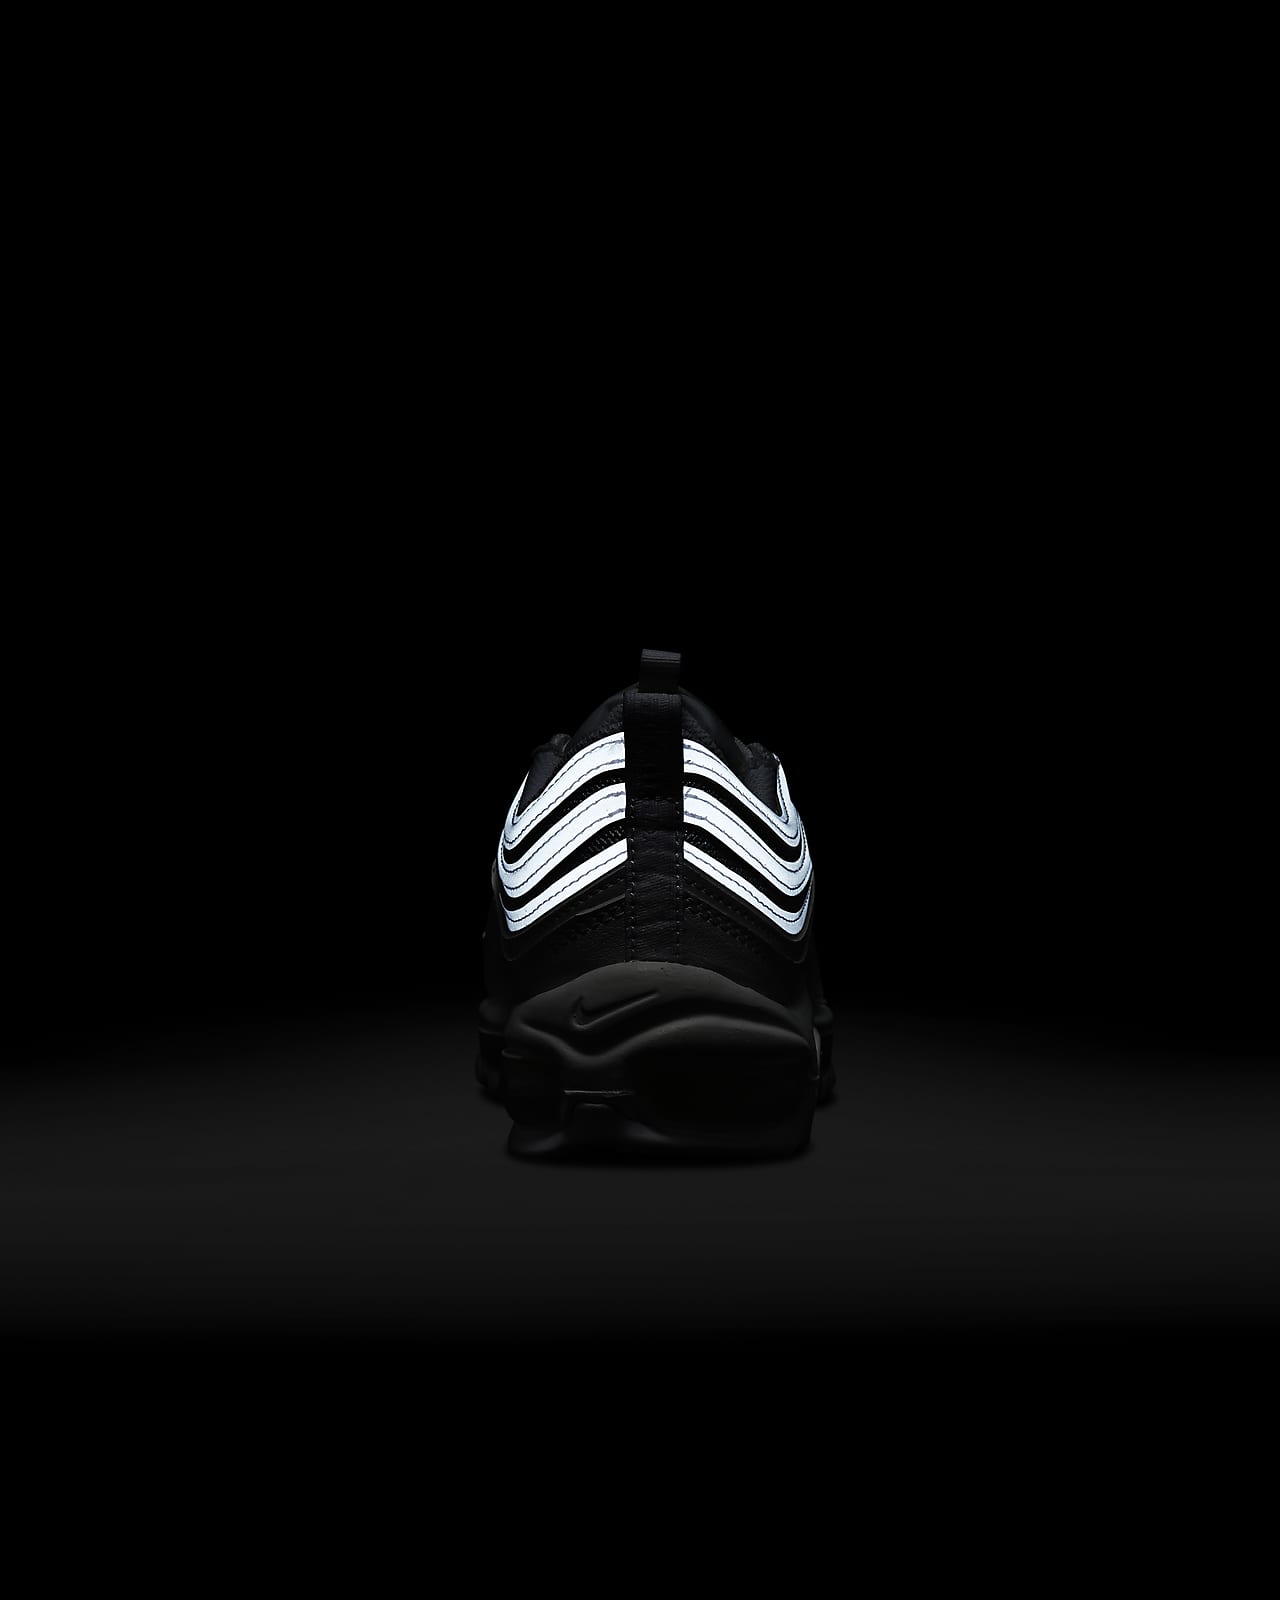 Nike Air Max 97 Shoes.